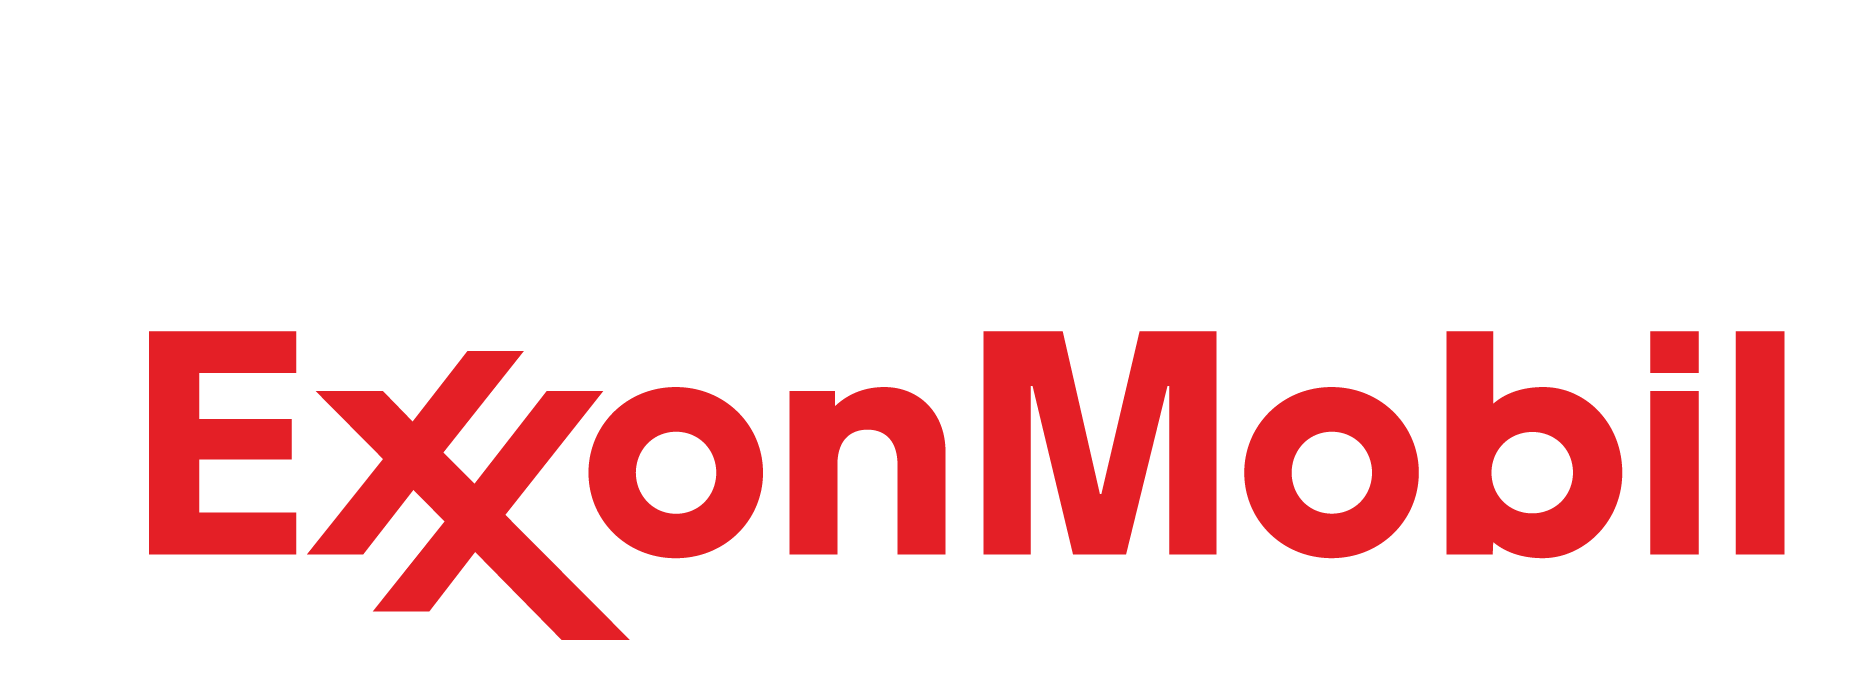 Exxonmobil Logo Png Hd Quality Png Play